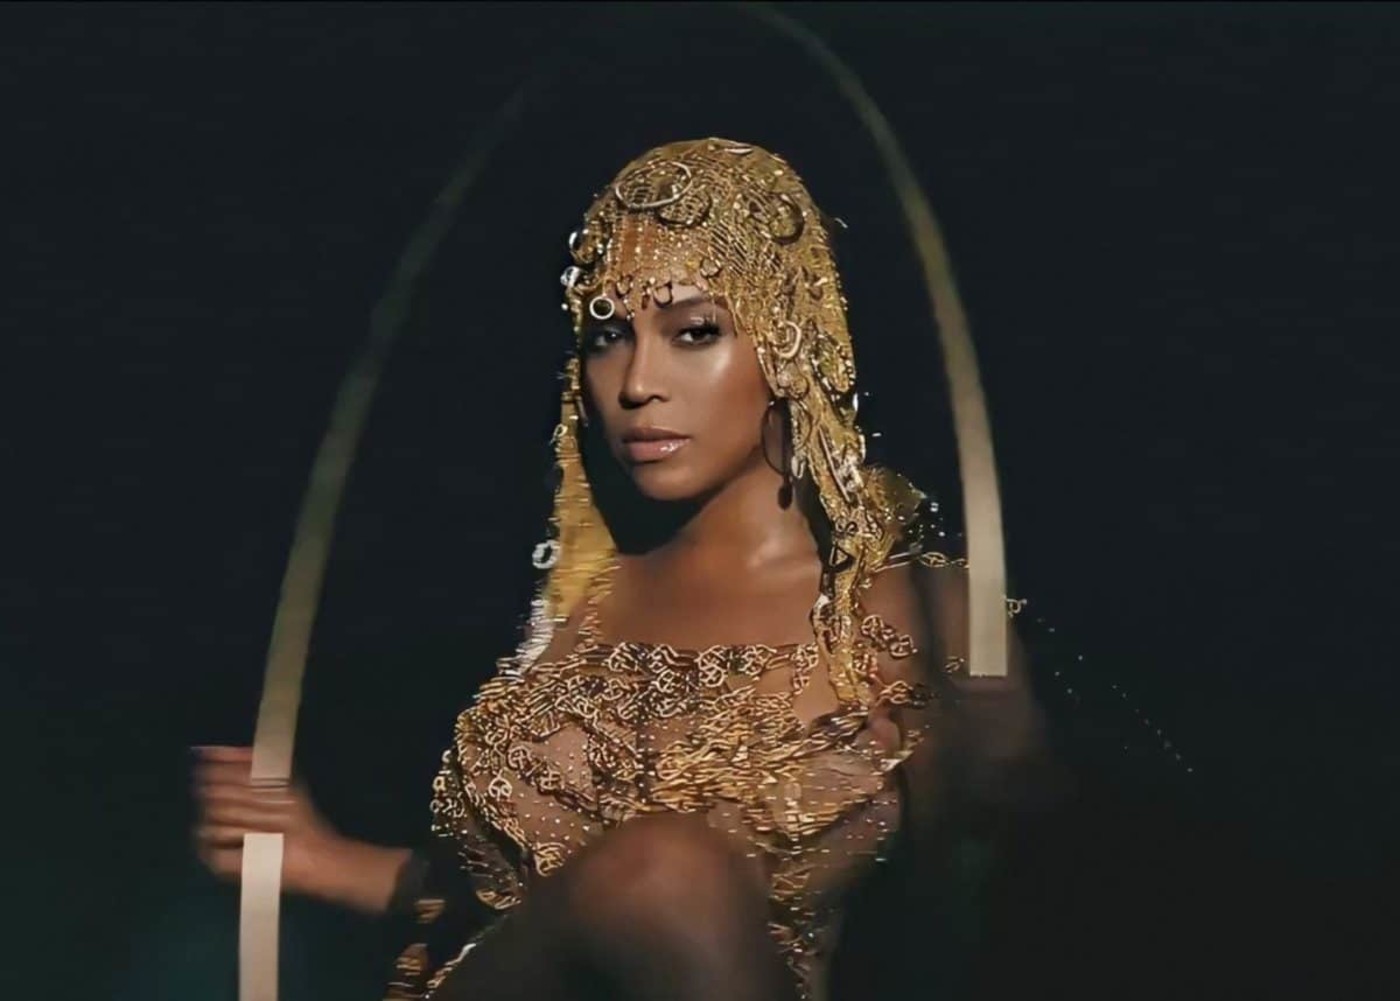 Beyonce In Black Is King Movie Wallpapers